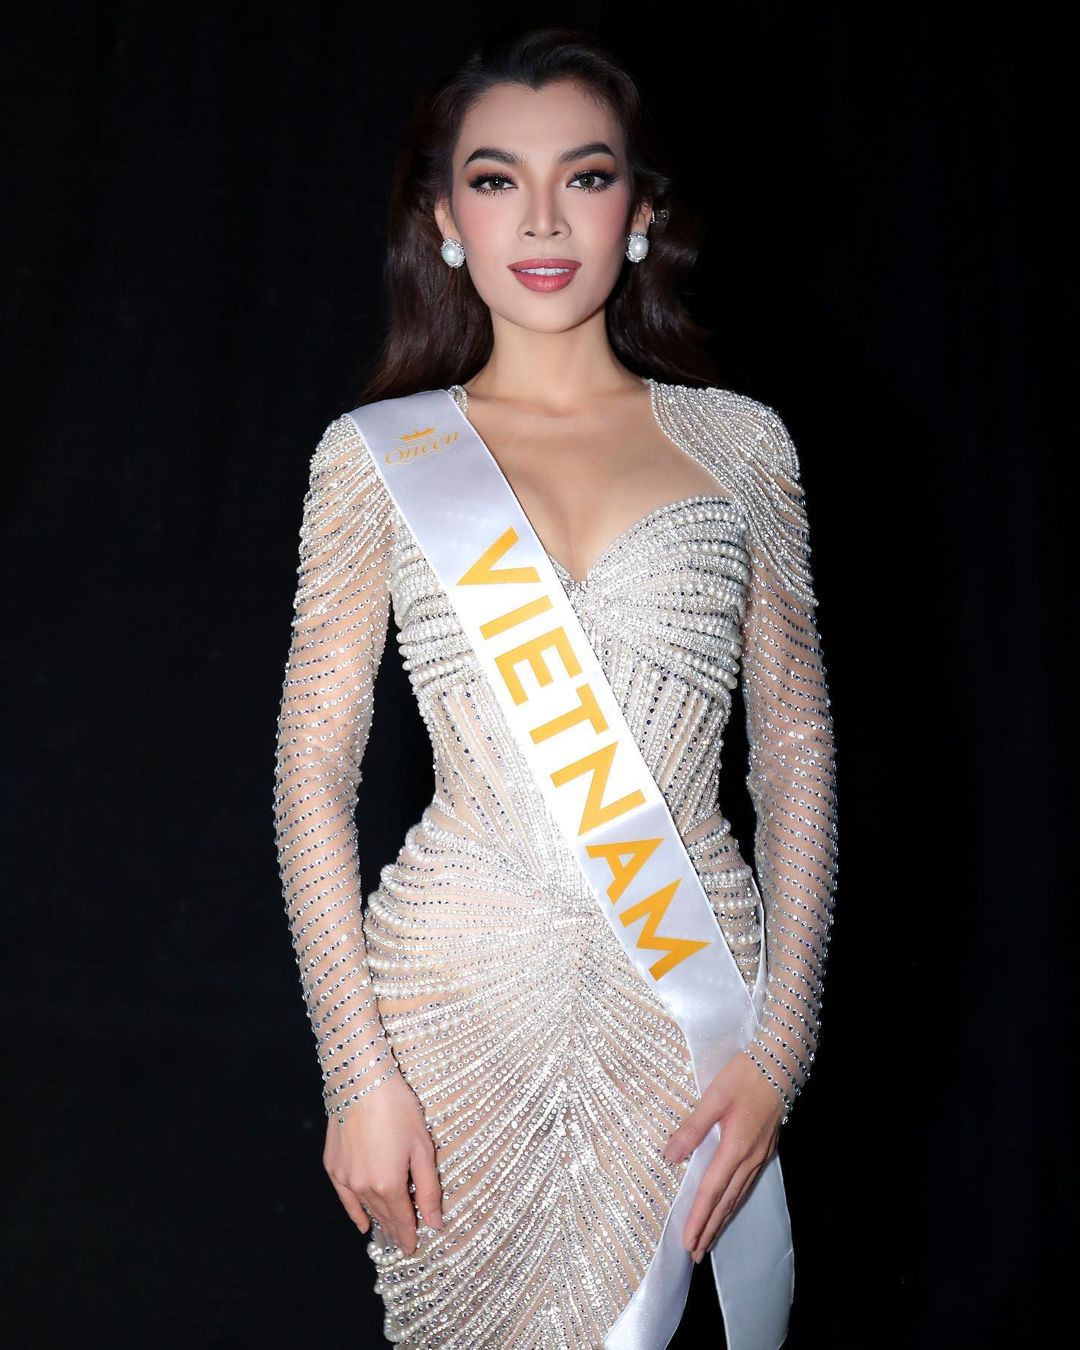 Trân Ðài Truong – Miss International Queen 2022 Contestants From ...